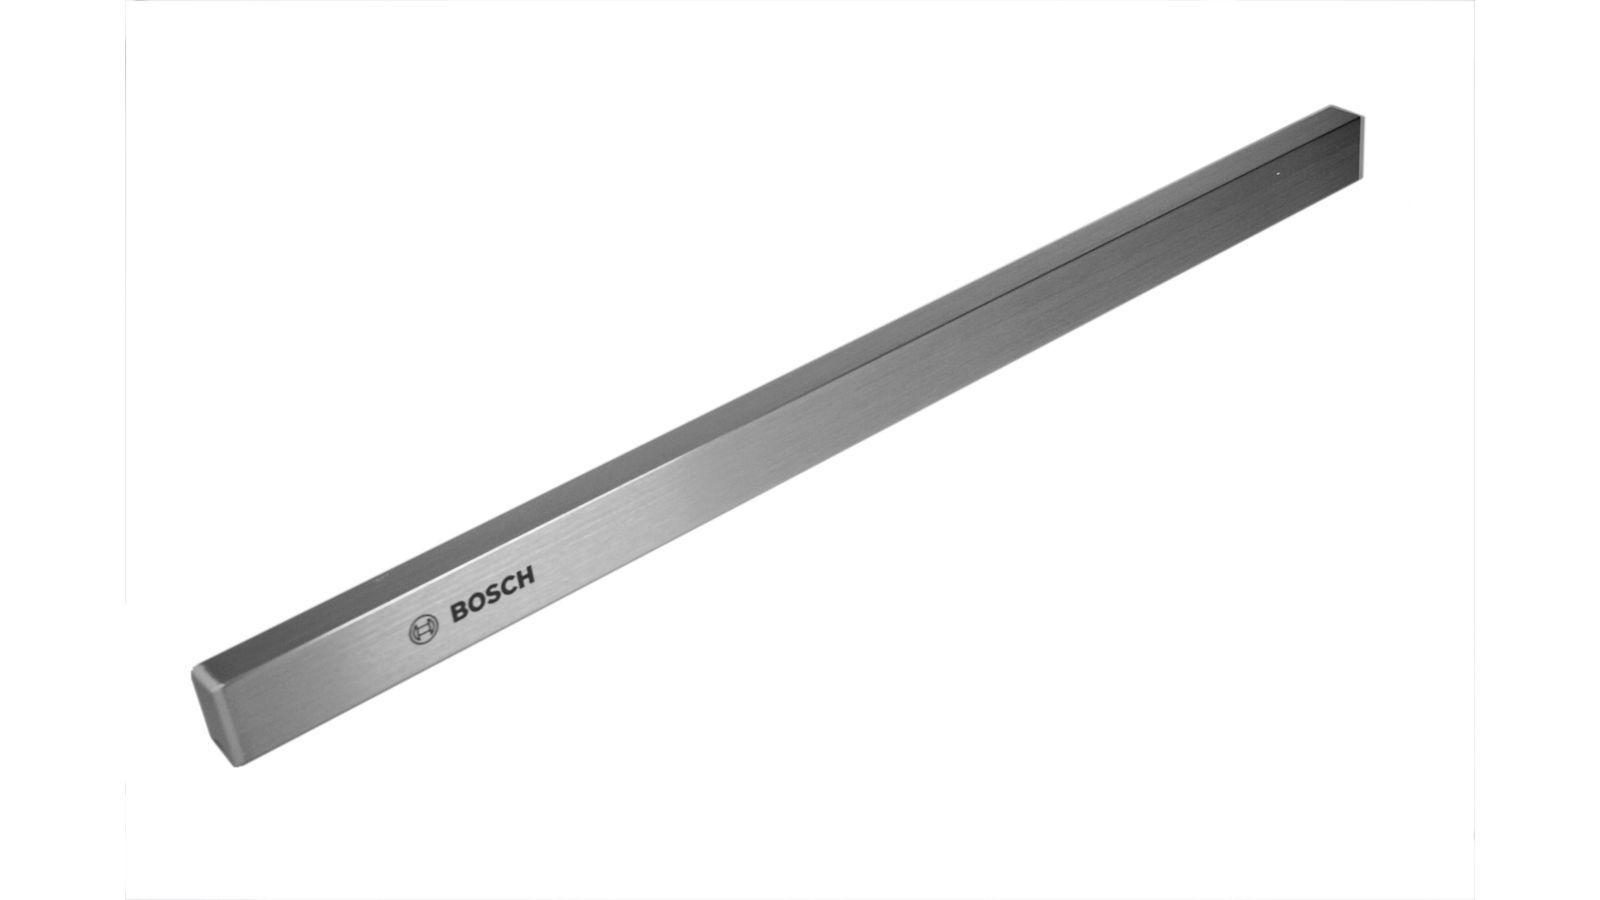 Stainless Steel Handle Strip for Bosch Siemens Cooker Hoods - 00434282 BSH - Bosch / Siemens